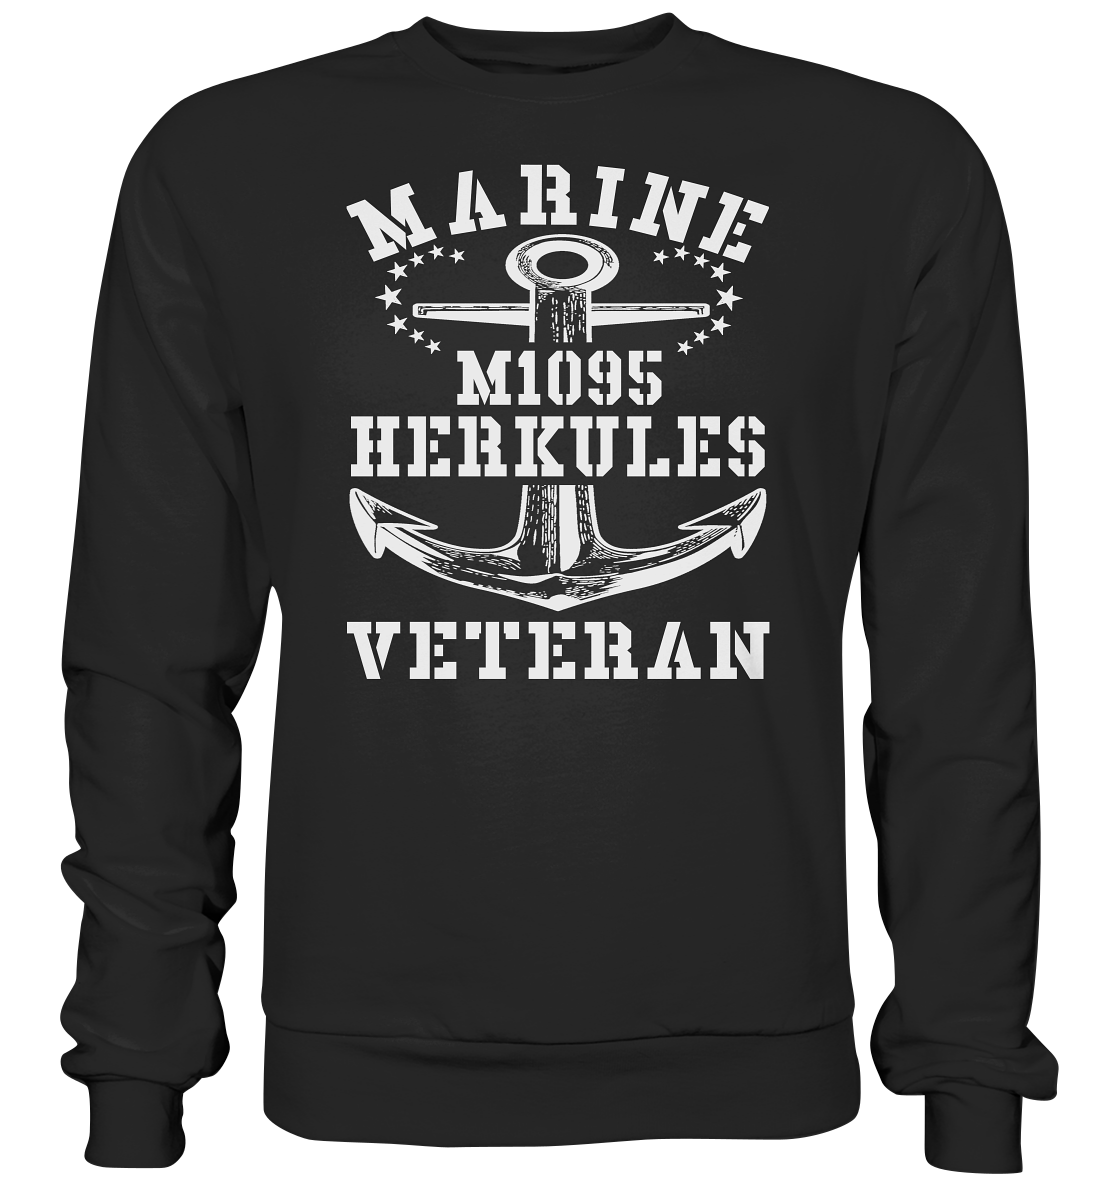 SM-Boot M1095 HERKULES Marine Veteran - Premium Sweatshirt